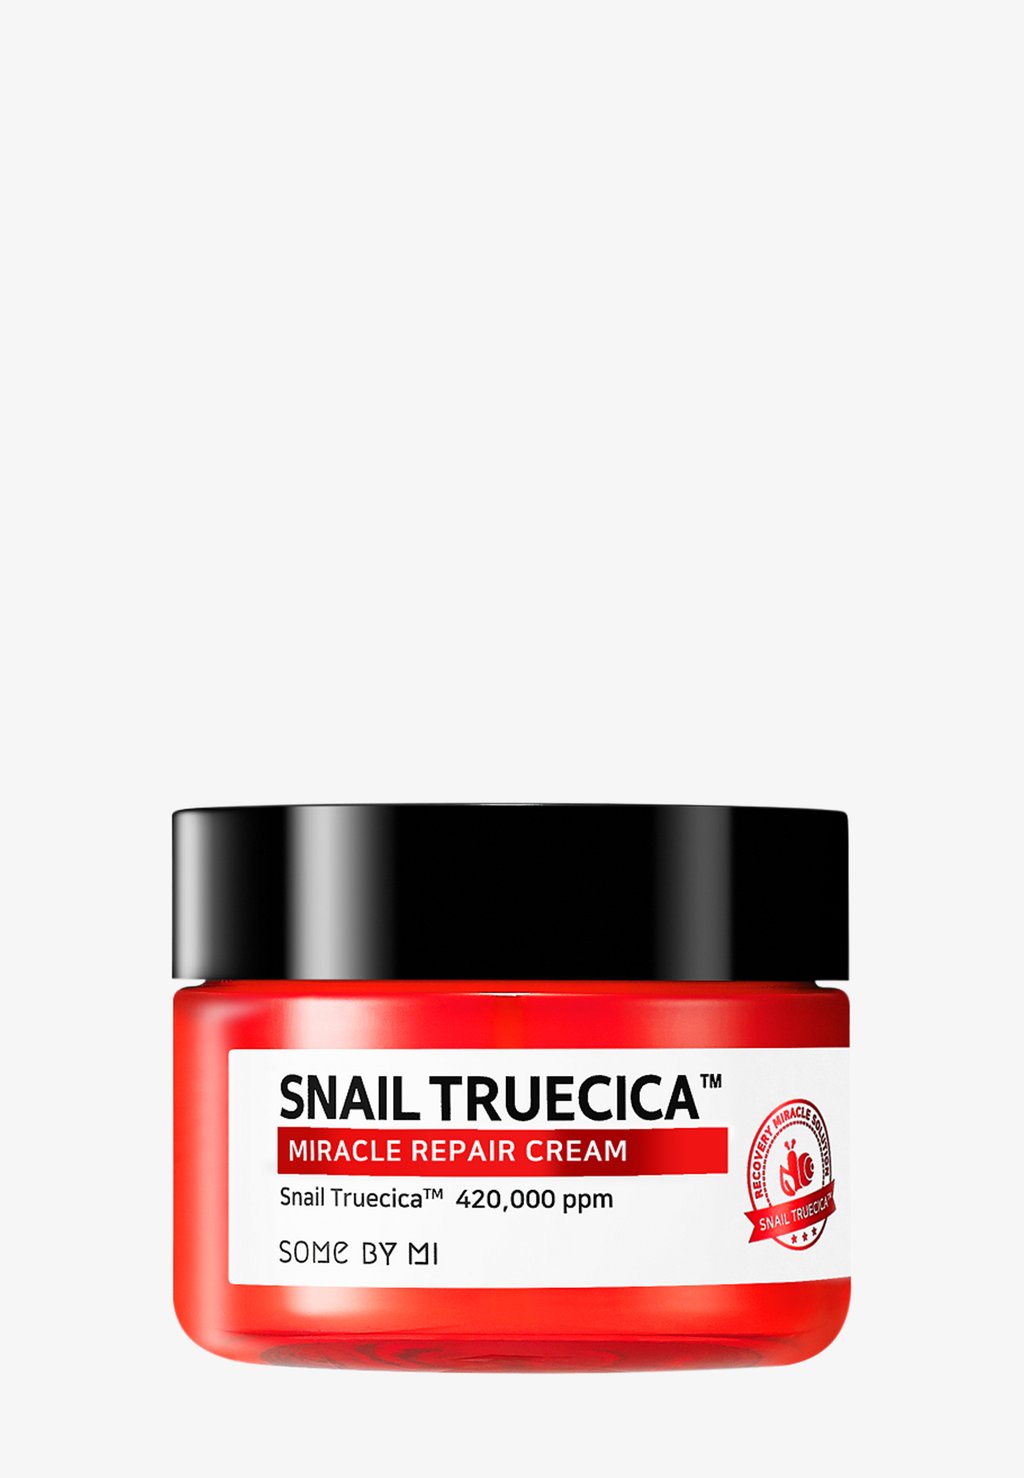 Дневной крем Snail Truecica Miracle Repair Cream SOME BY MI some by mi repair cream snail truecica miracle white 2 11 oz 60 g